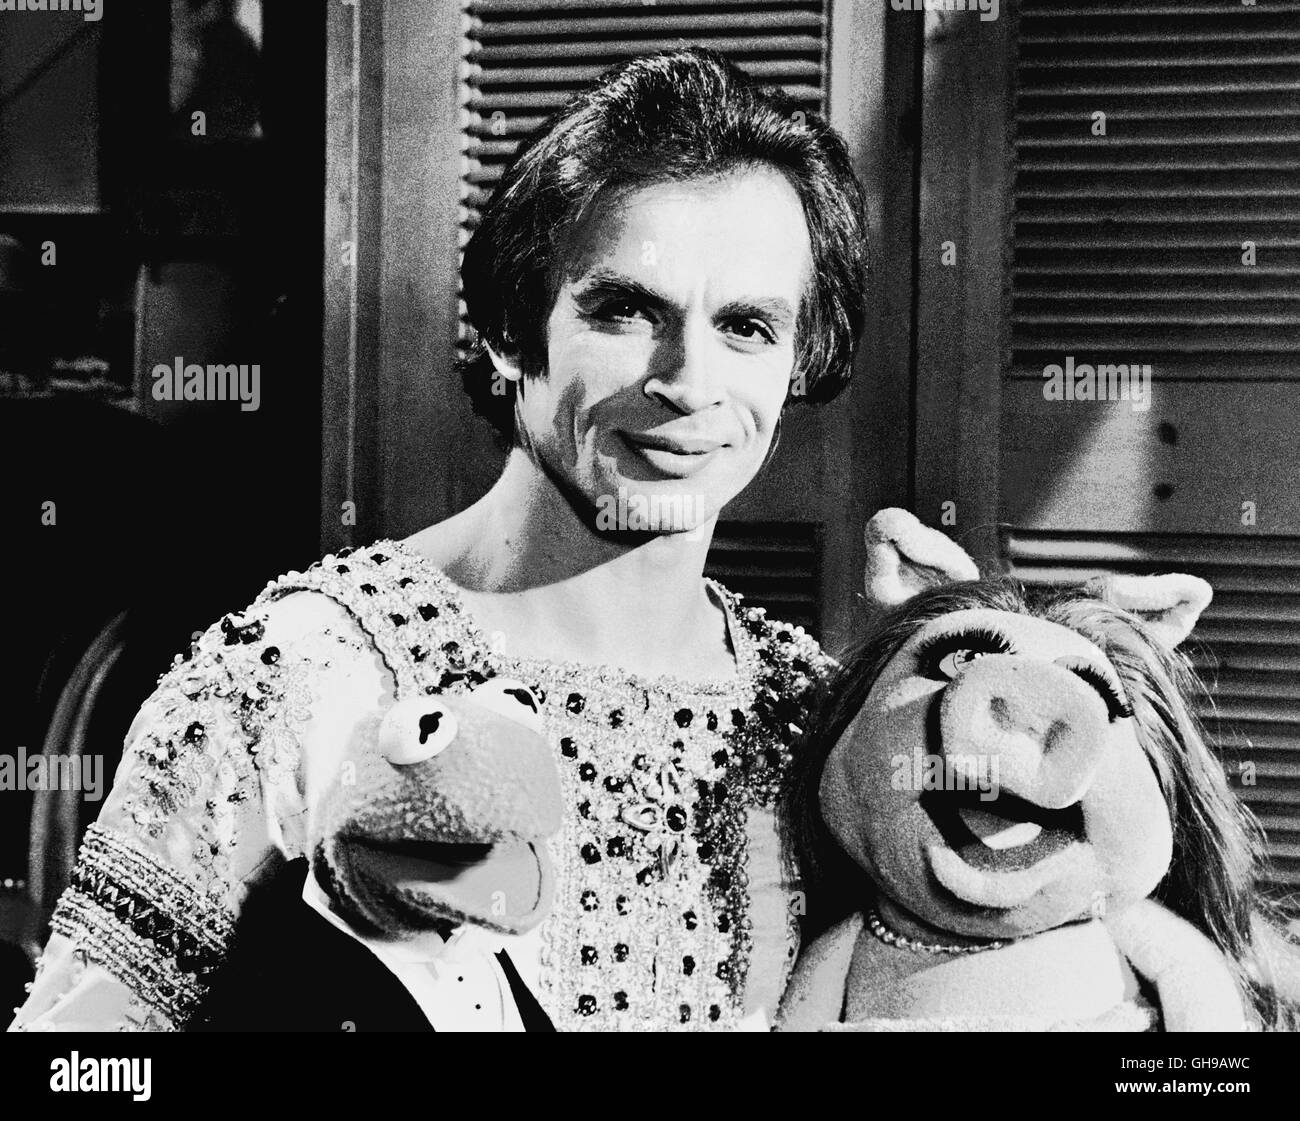 DIE MUPPETS-SHOW / i Muppets Show / Ballett-Star RUDOLF NUREJEW, hier mit Miss Piggy, zu Gast in der Muppets-Show (80er Jahre). aka. I Muppets Show Foto Stock